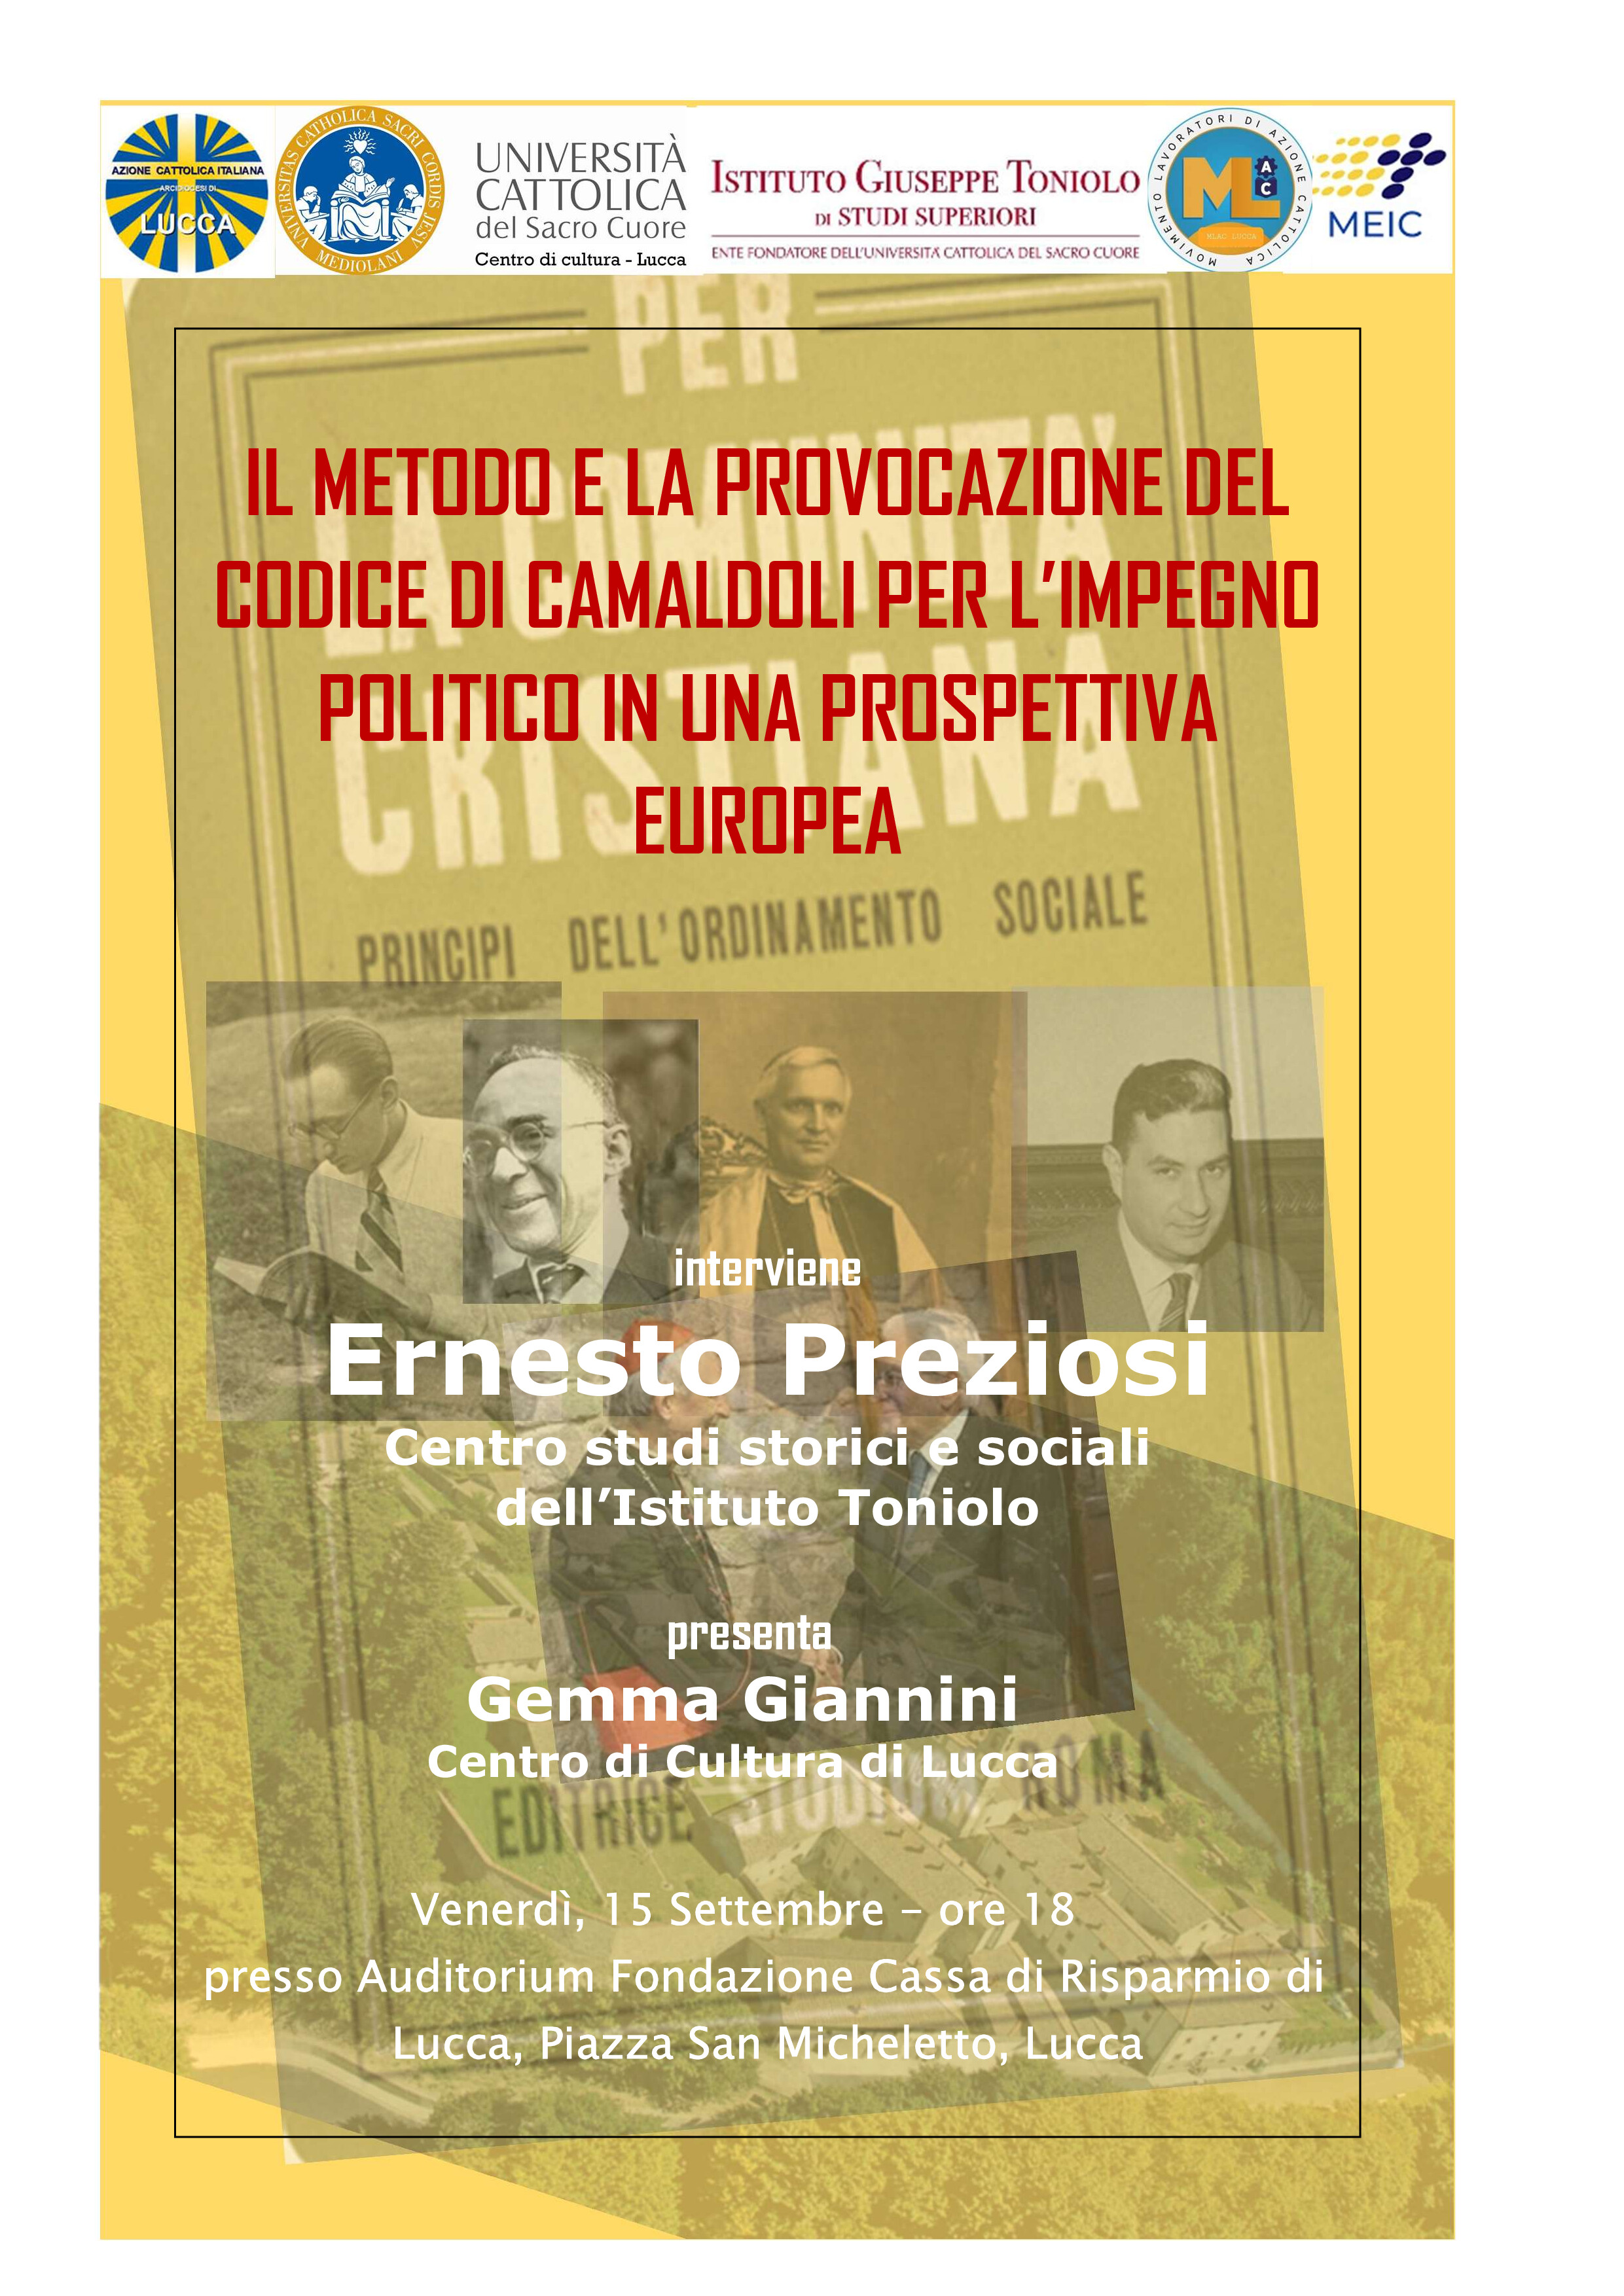 Il Metodo e la provocazione del Codice di Camaldoli per l'impegno politico in una prespettiva Europea